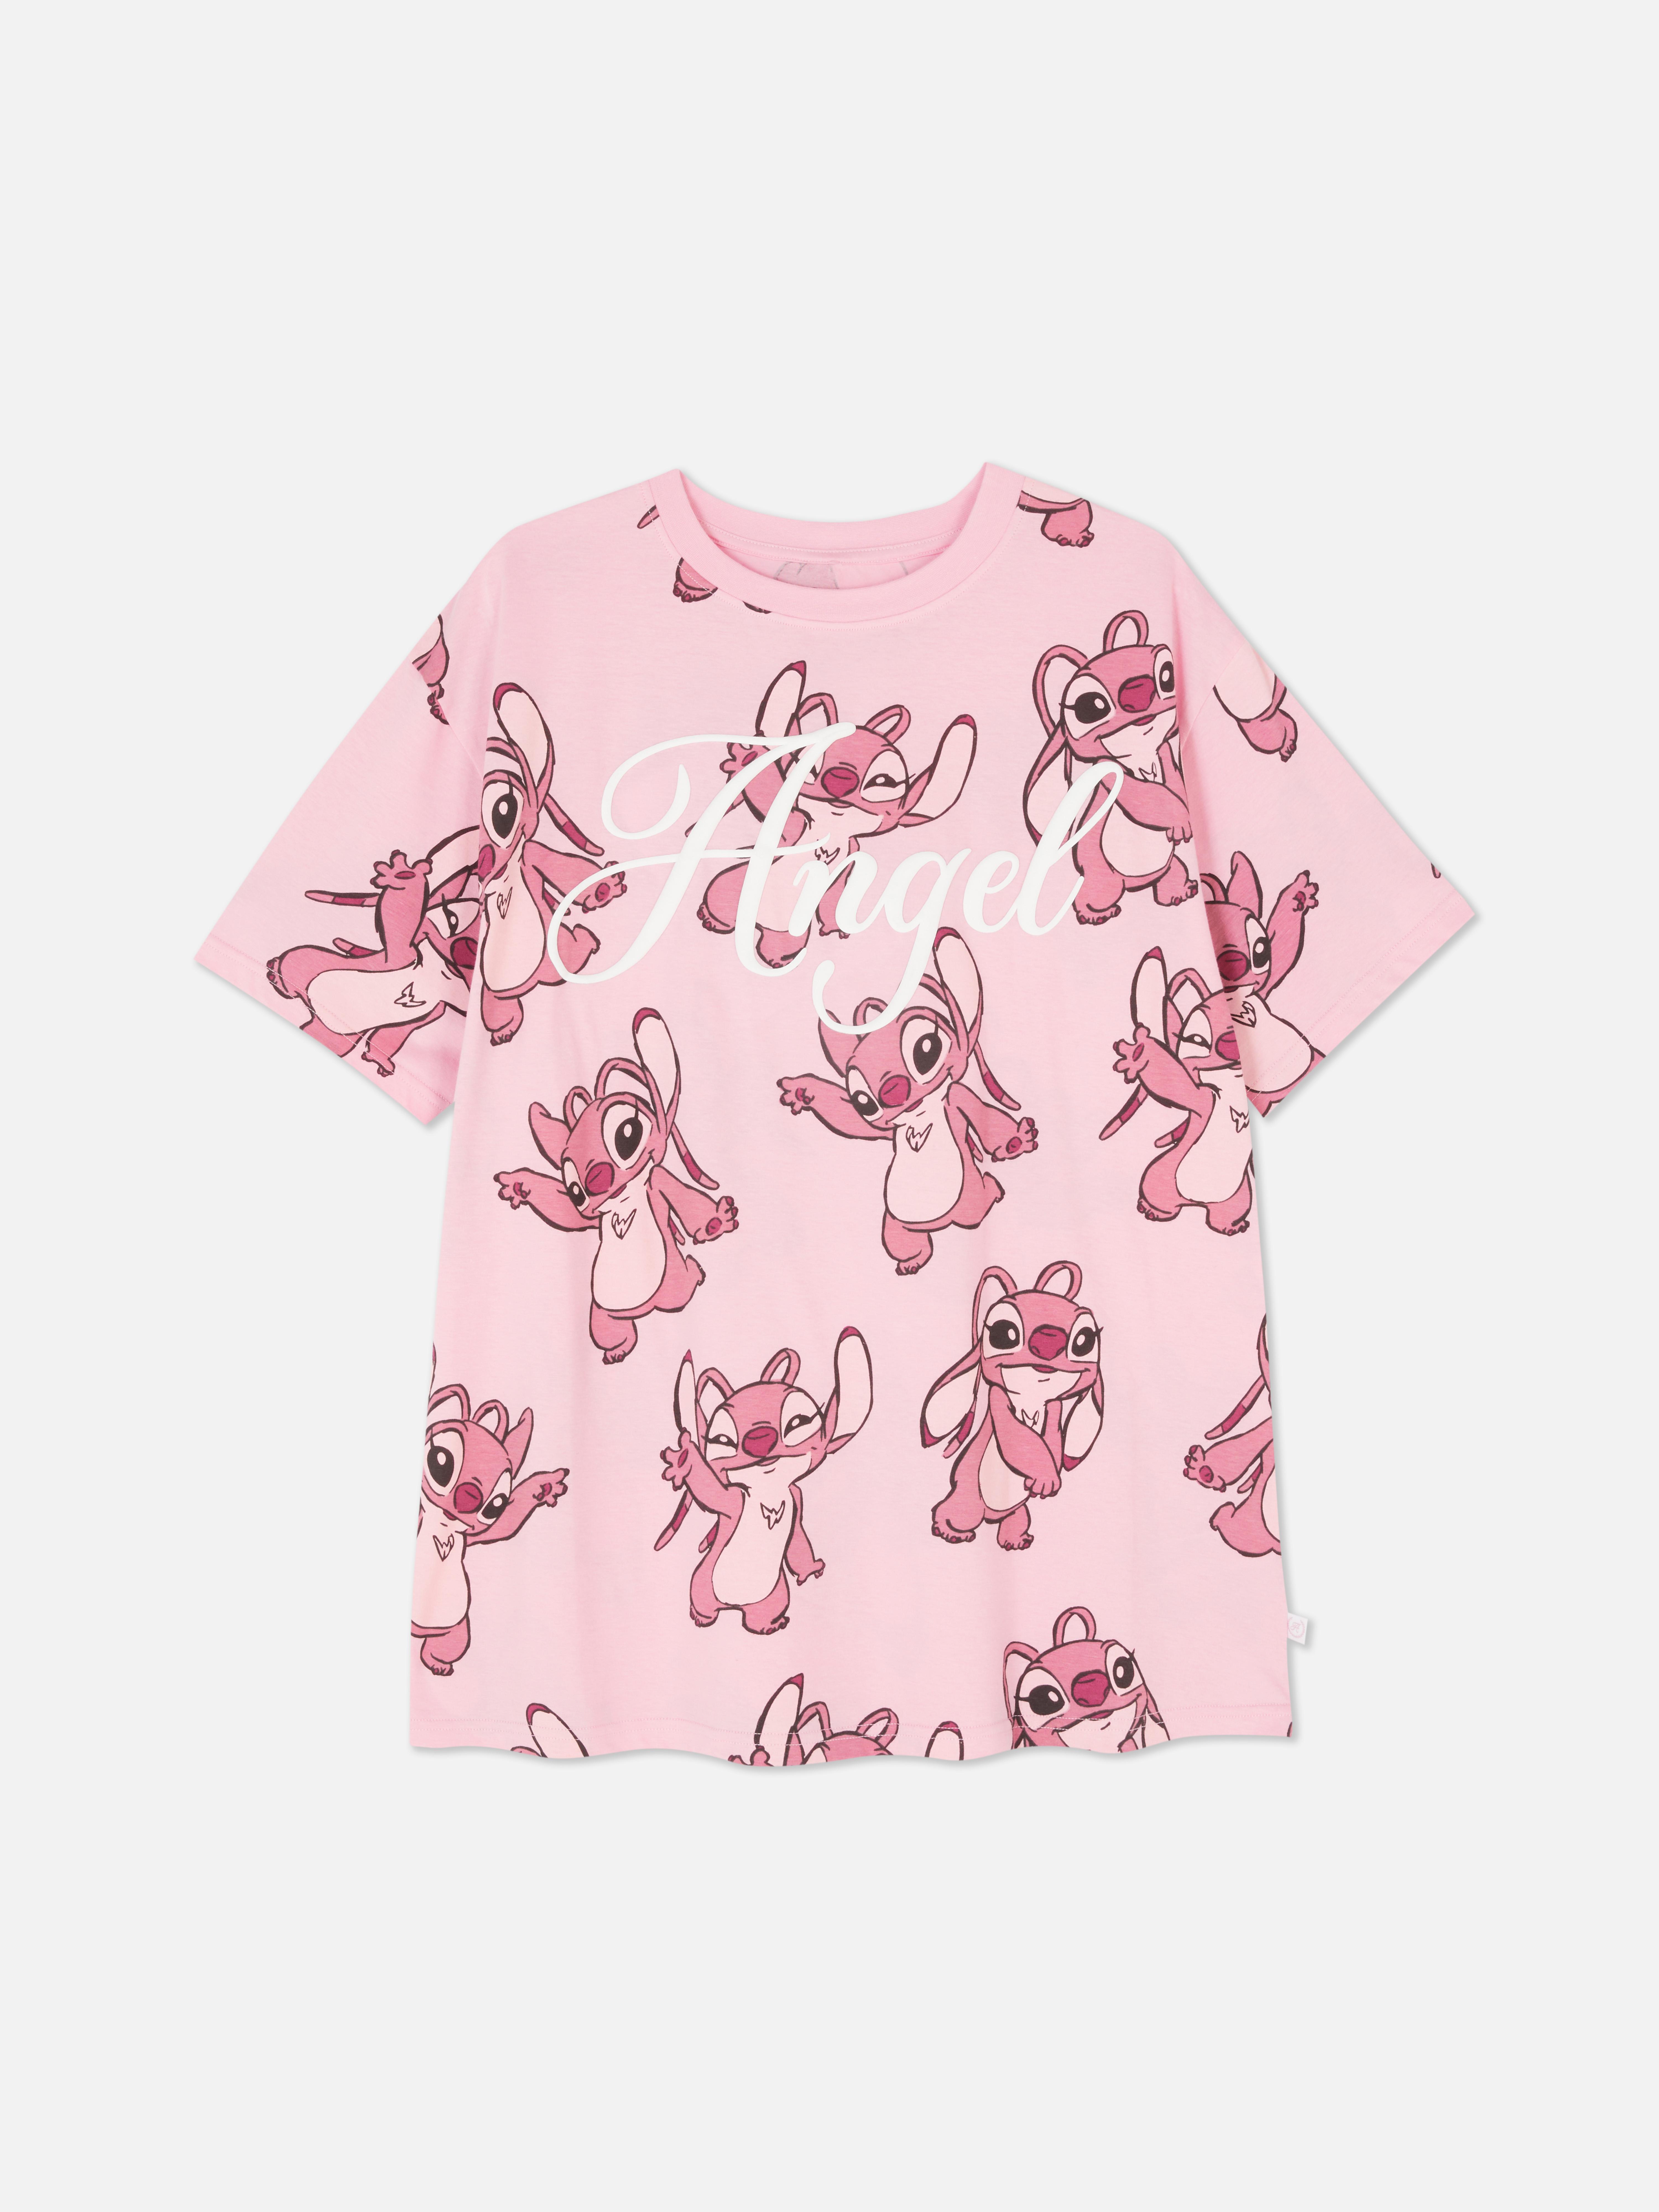 Disney’s Lilo and Stitch Angel Pajama Top